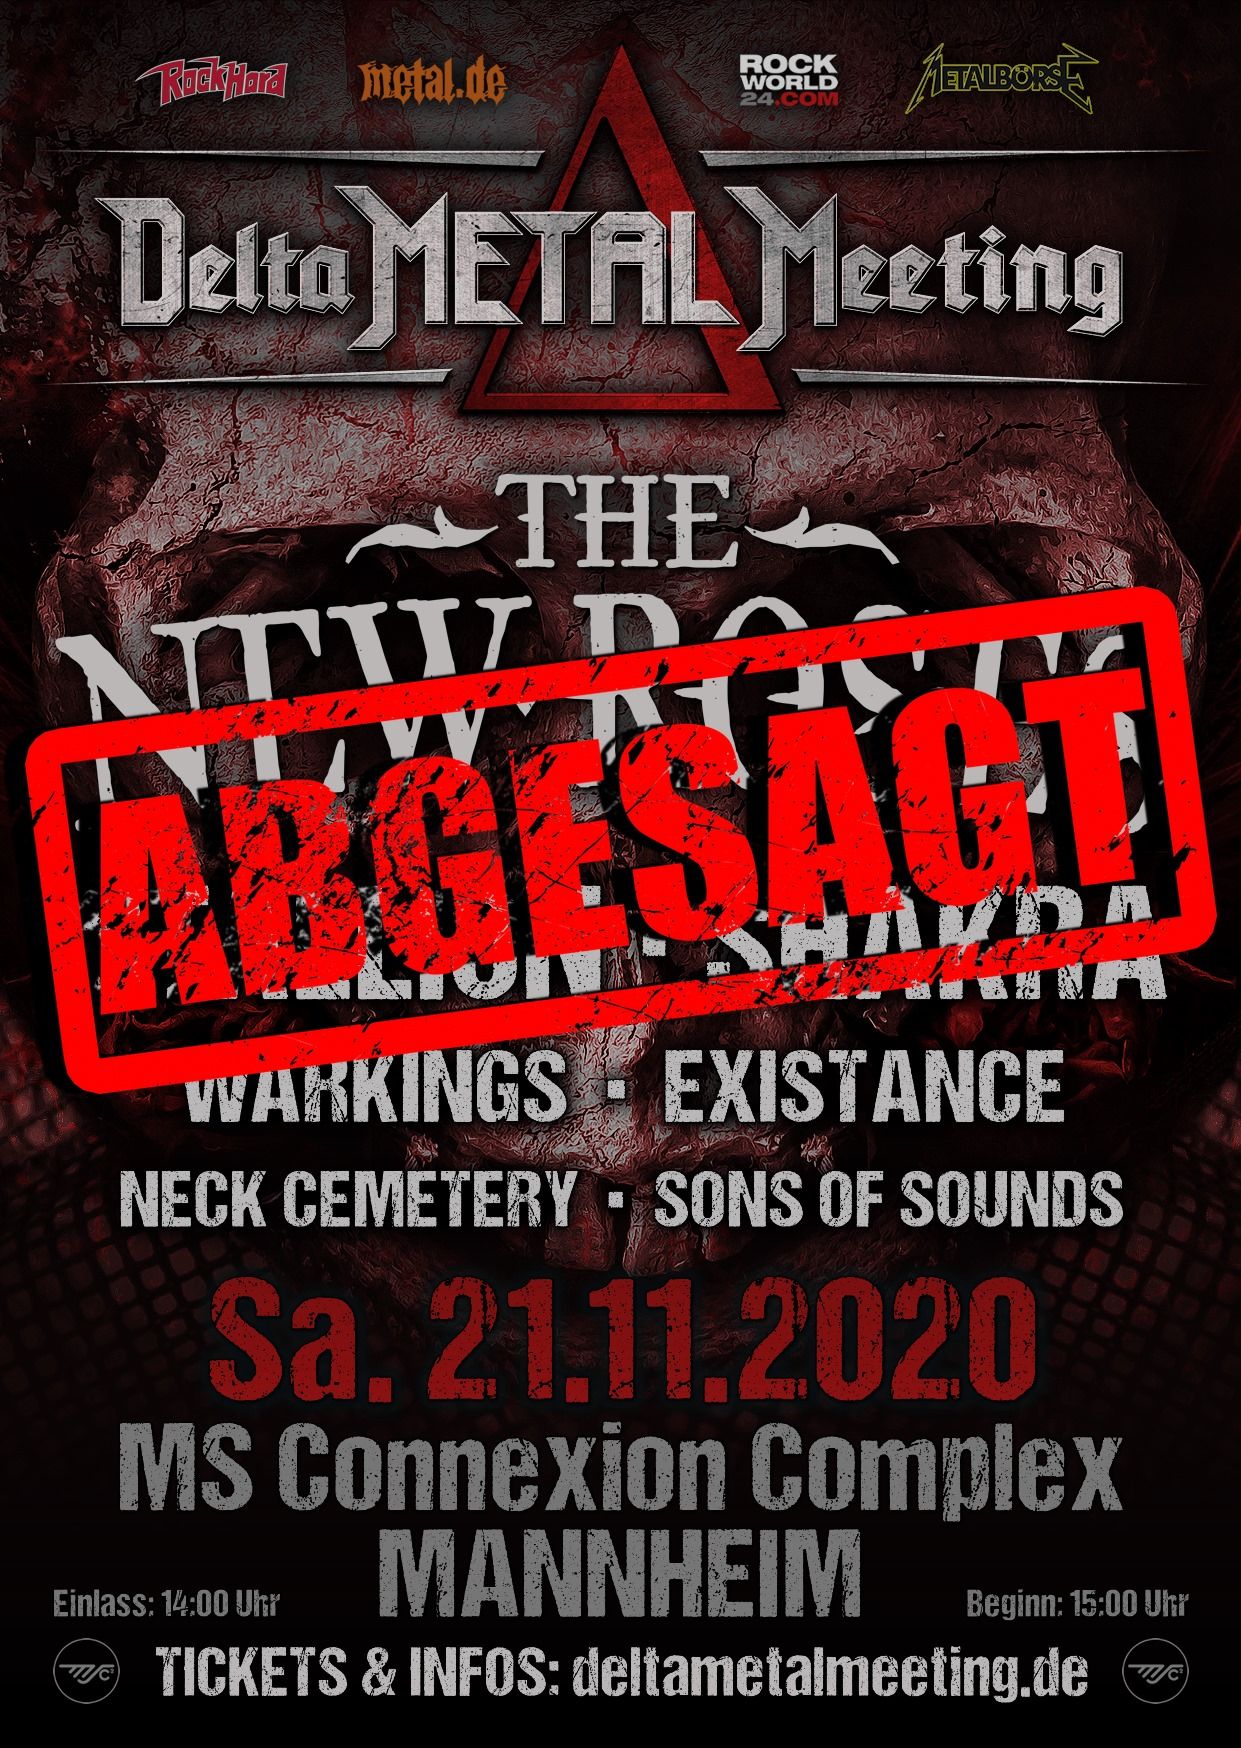 Delta Metal Meeting 2020 ist abgesagt